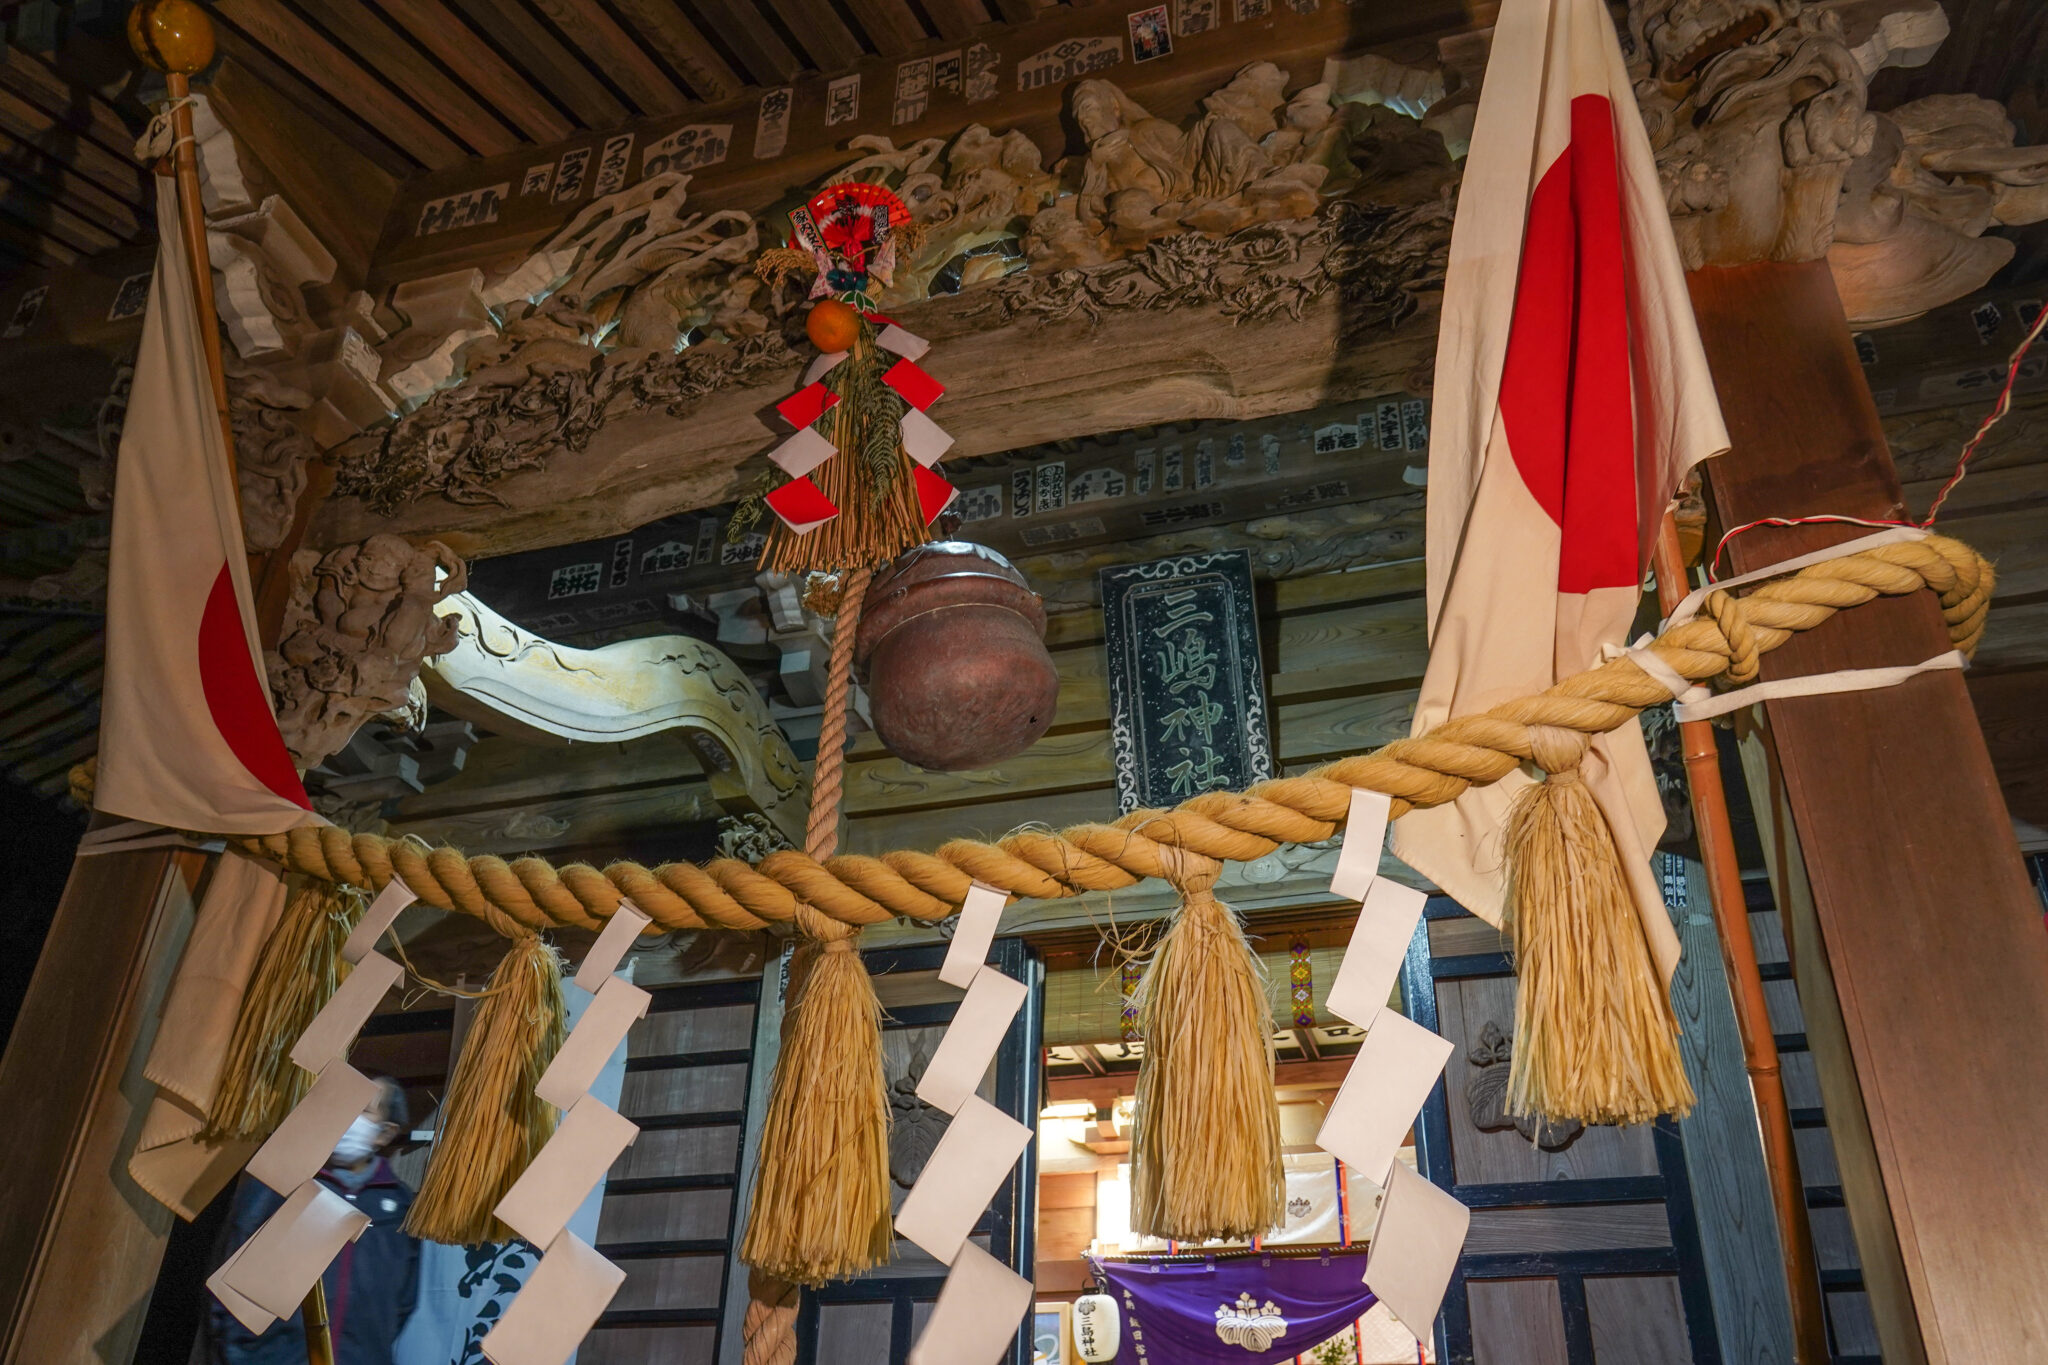 社殿正面の竜の彫刻は、堂宮彫刻師で江奈村の名工・石田半兵衛の傑作とも言われています。